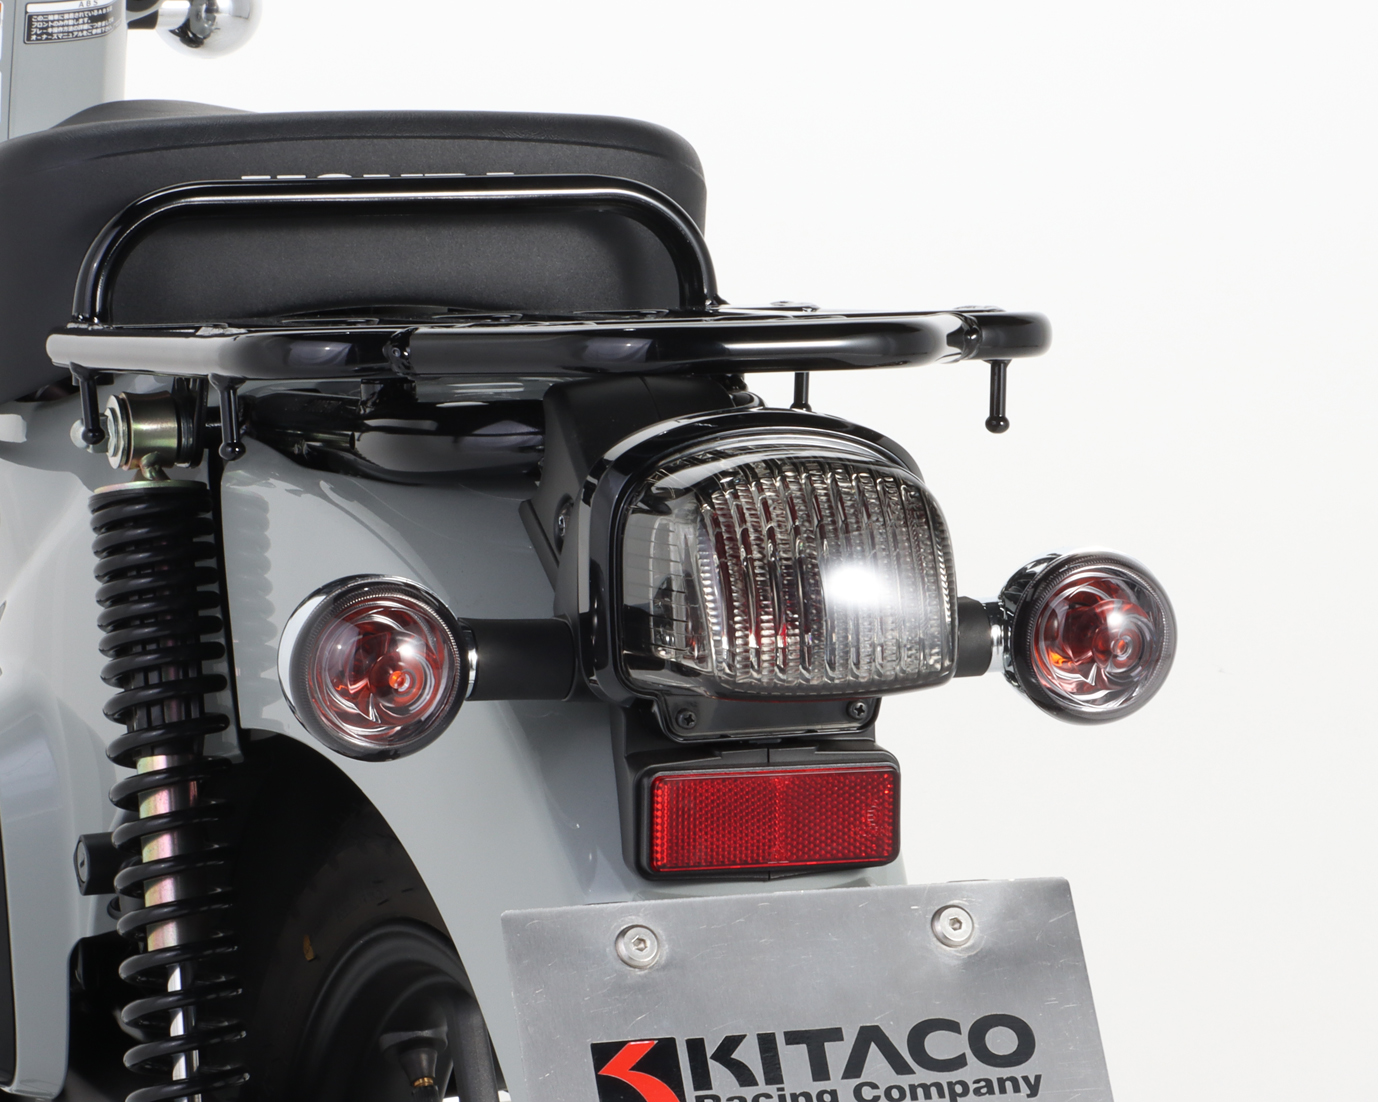 KITACO キタコ ウインカーレンズセット スーパーカブ50 スーパーカブ50プロ スーパーカブ110 スーパーカブ110プロ クロスカブ50 クロスカブ110